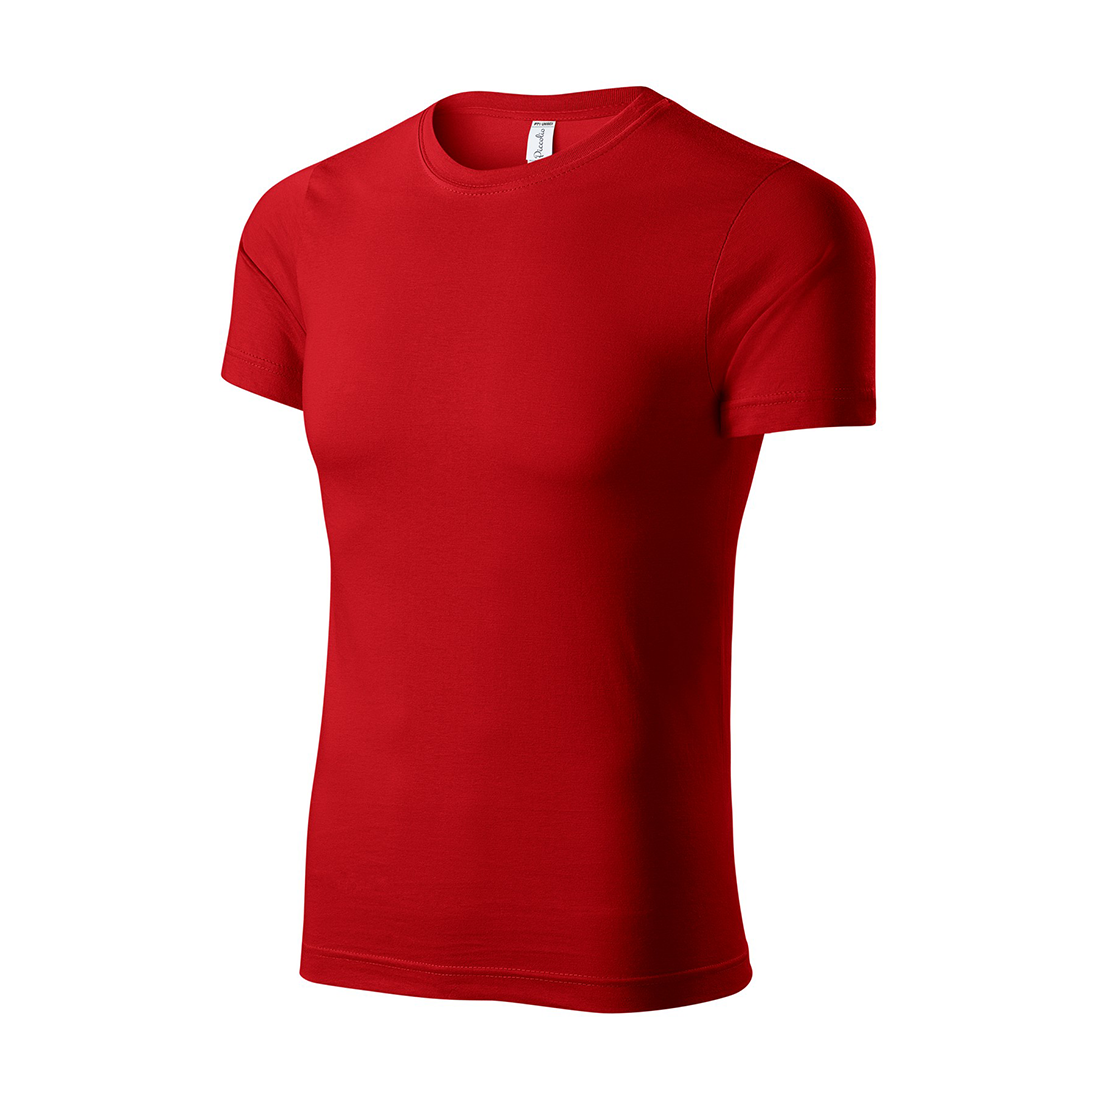 Camiseta unisex de algodón - Ropa de protección